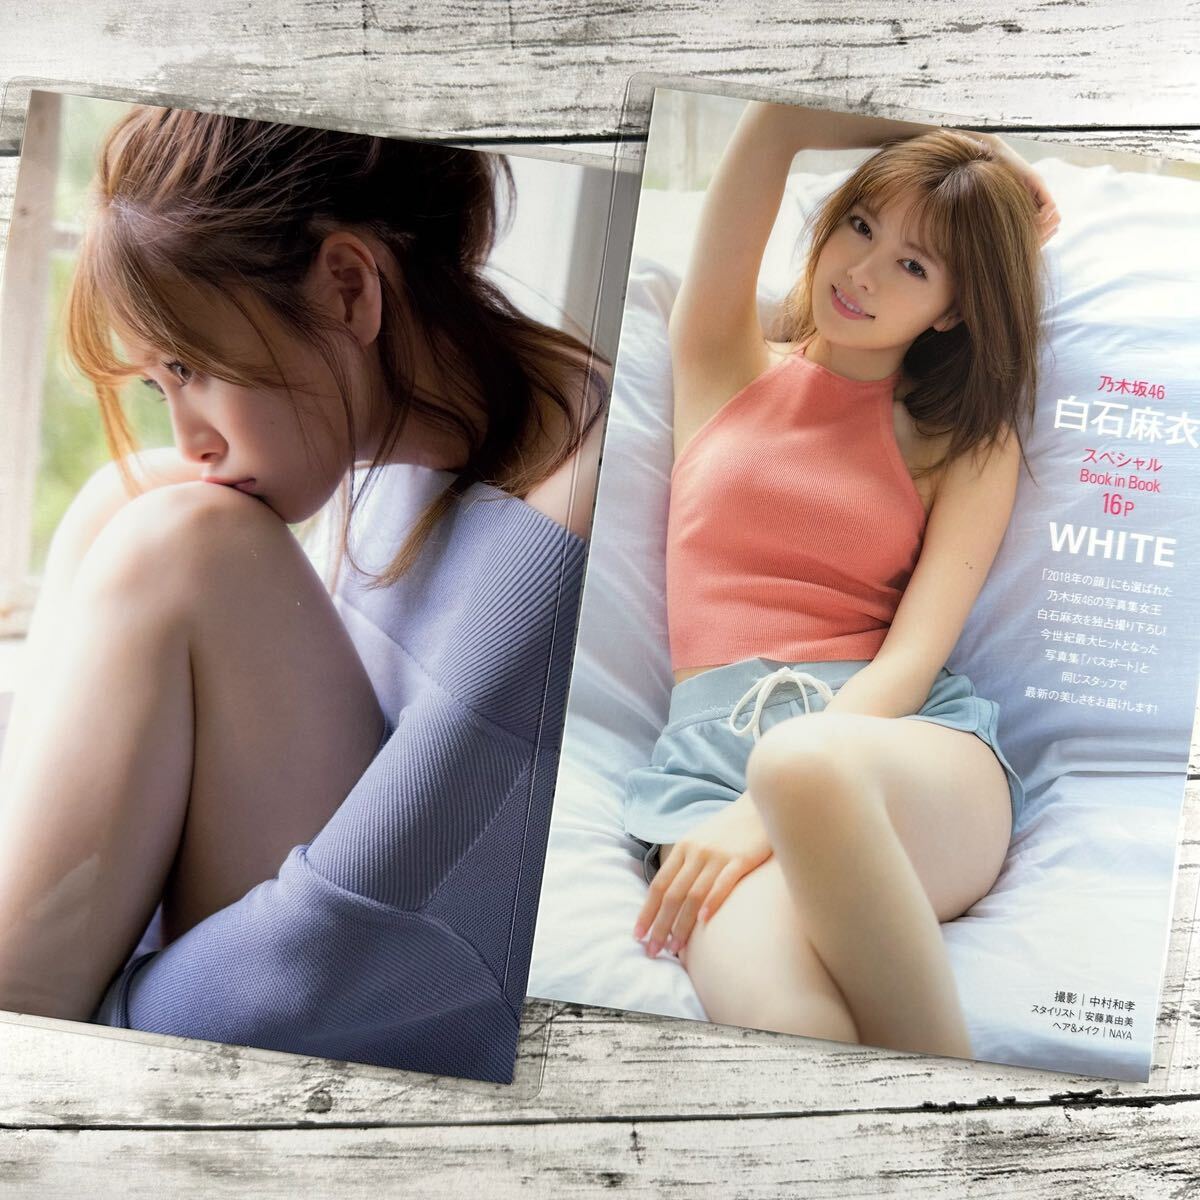 [ высокое качество ламинирование отделка ][ белый камень лен . Nogizaka 46 ] журнал вырезки 15P B5 плёнка купальный костюм bikini model актер женщина super 